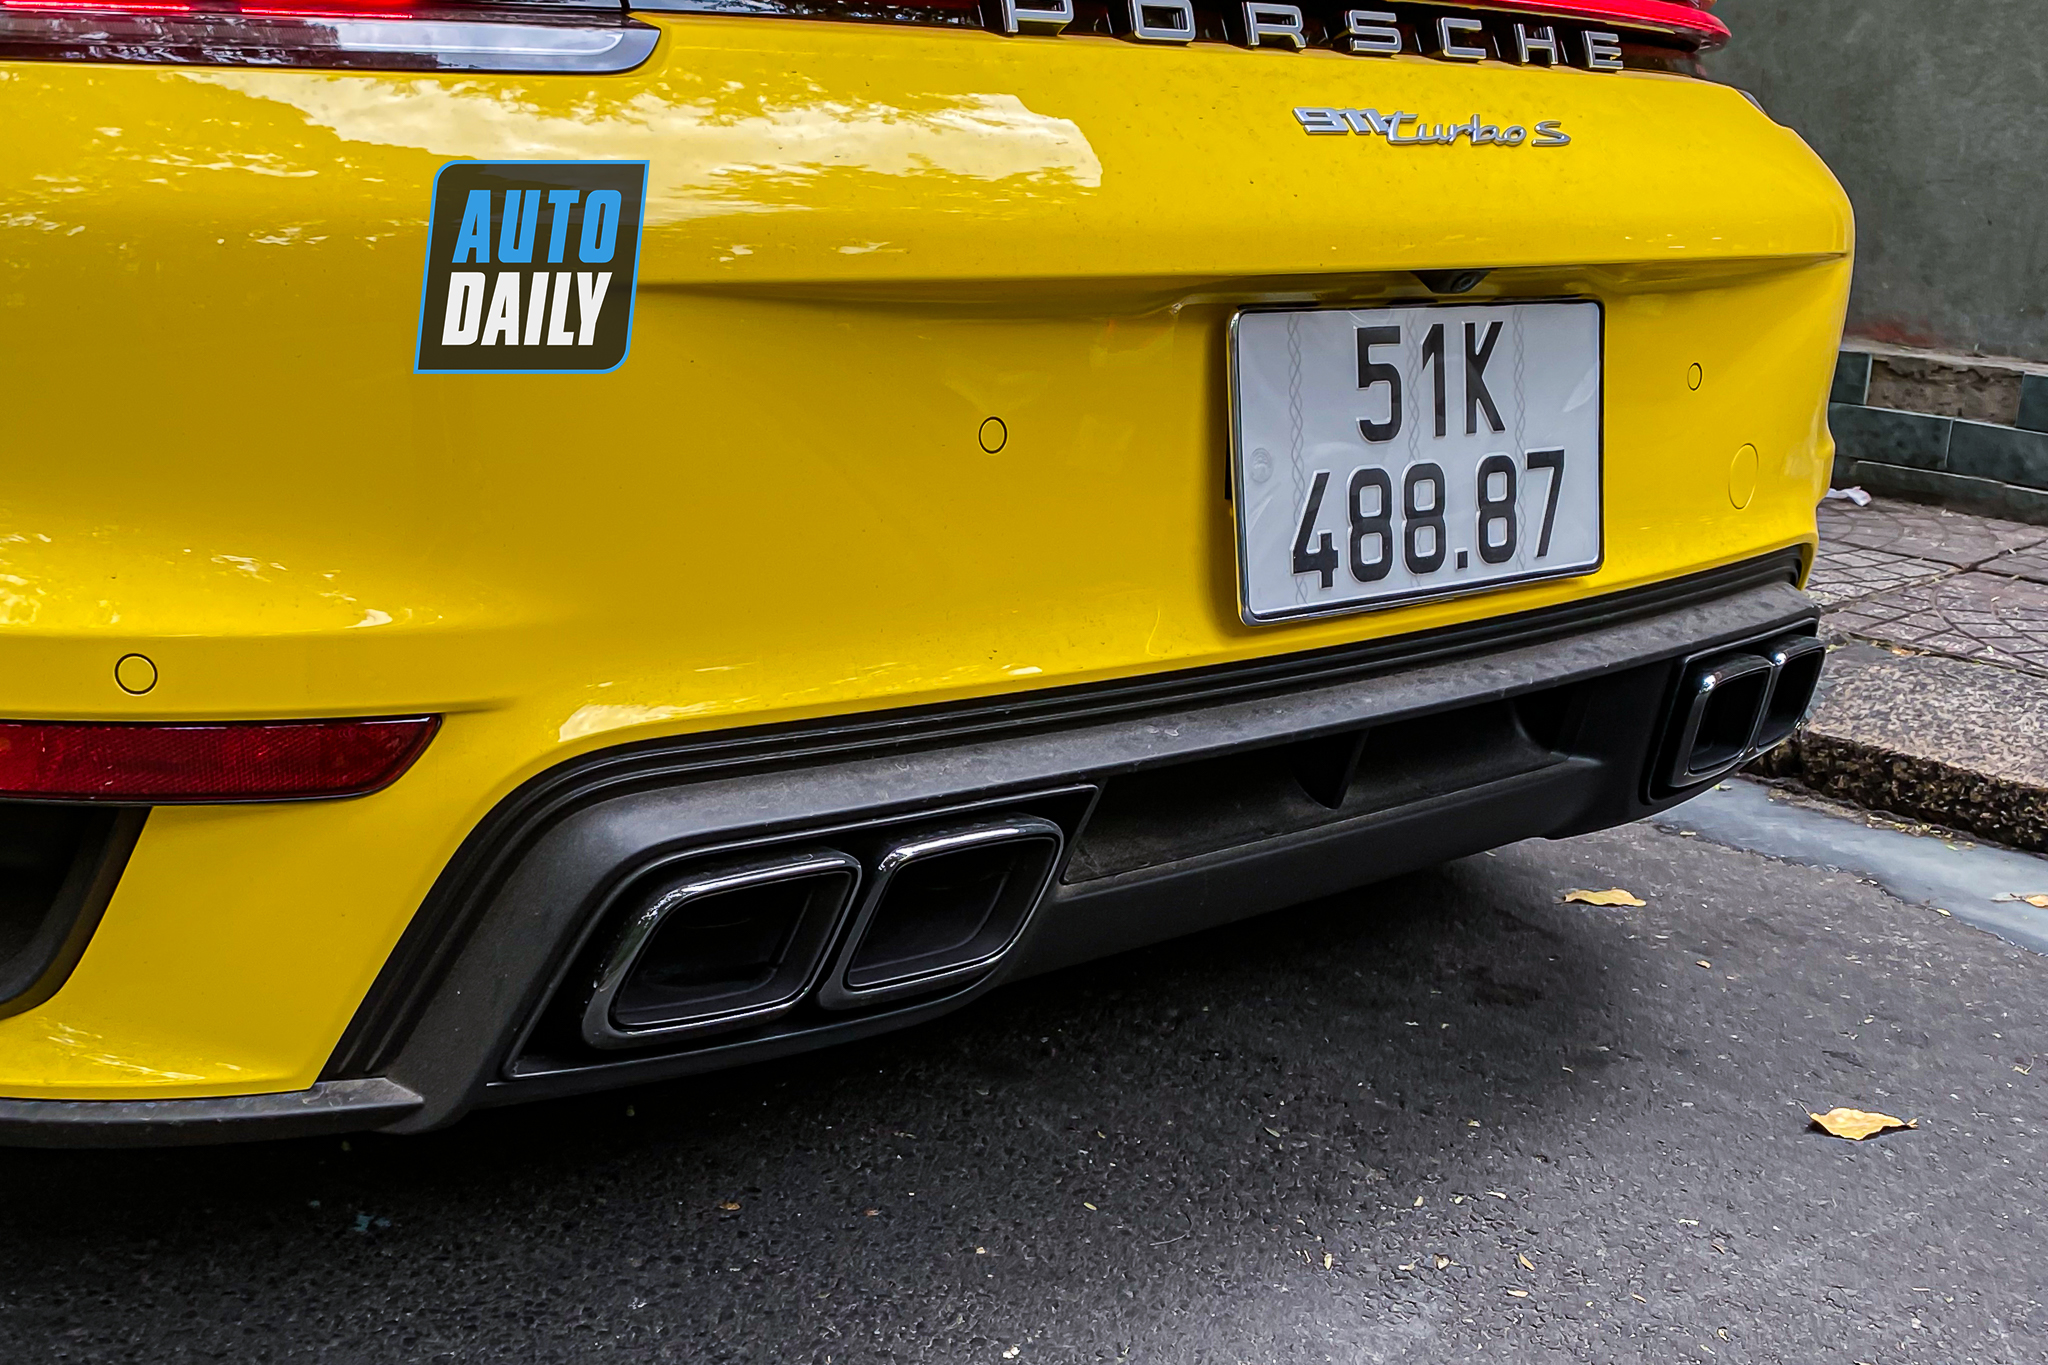 Bắt gặp Porsche 911 Turbo S hơn 17 tỷ màu vàng độc nhất Việt Nam của đại gia Sài Gòn porsche-911-turbo-s-mau-vang-autodaily-10.JPG